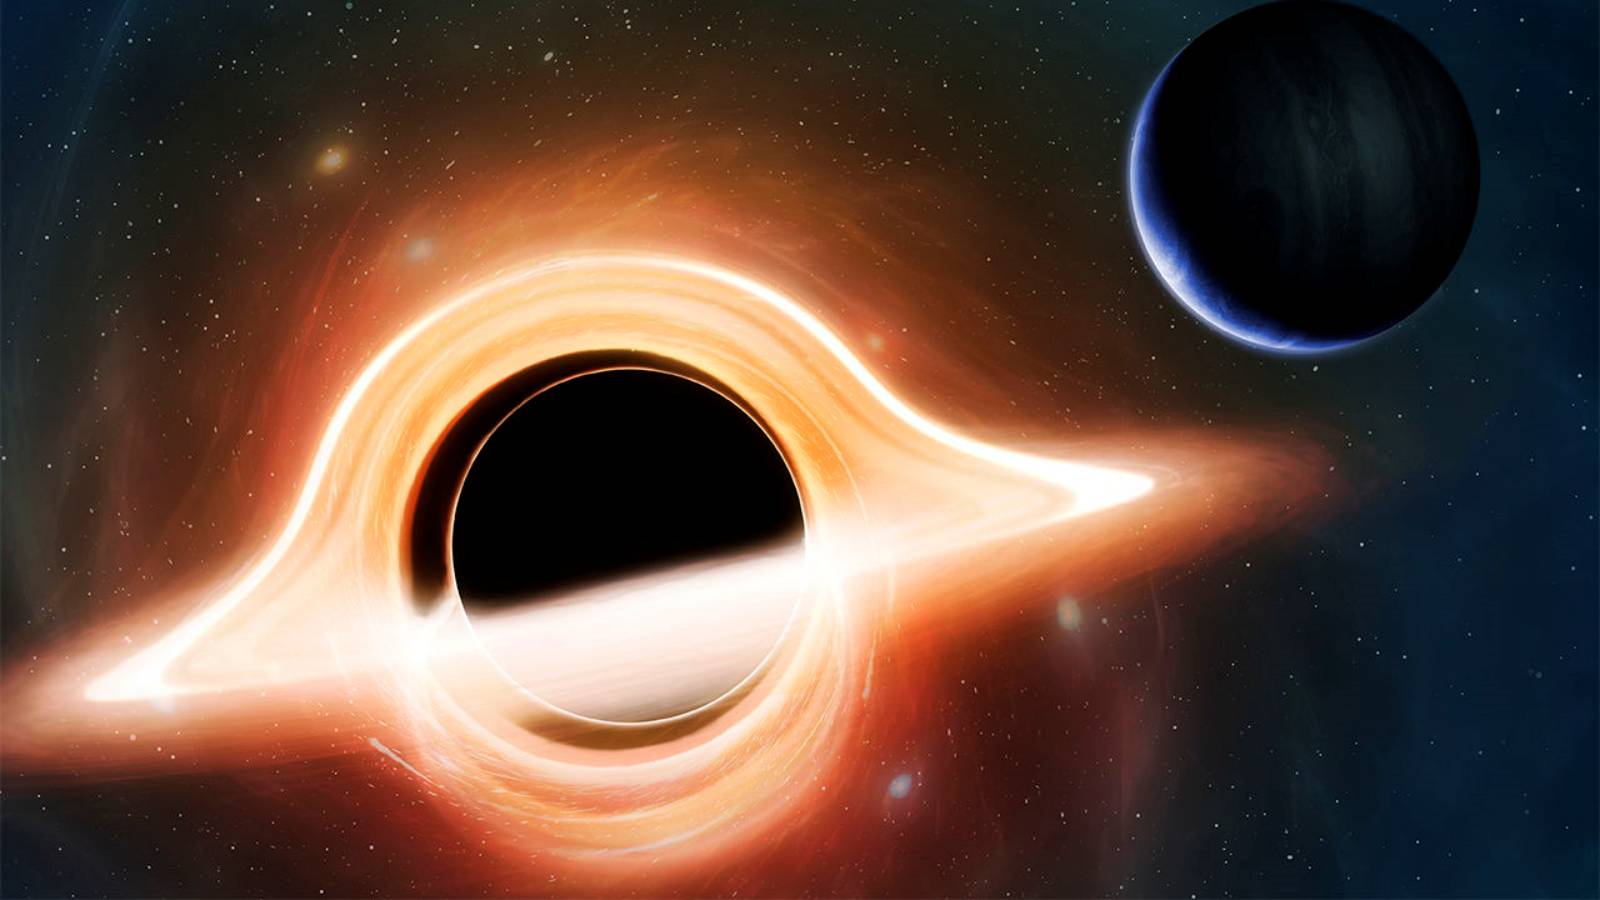 Increspature del buco nero